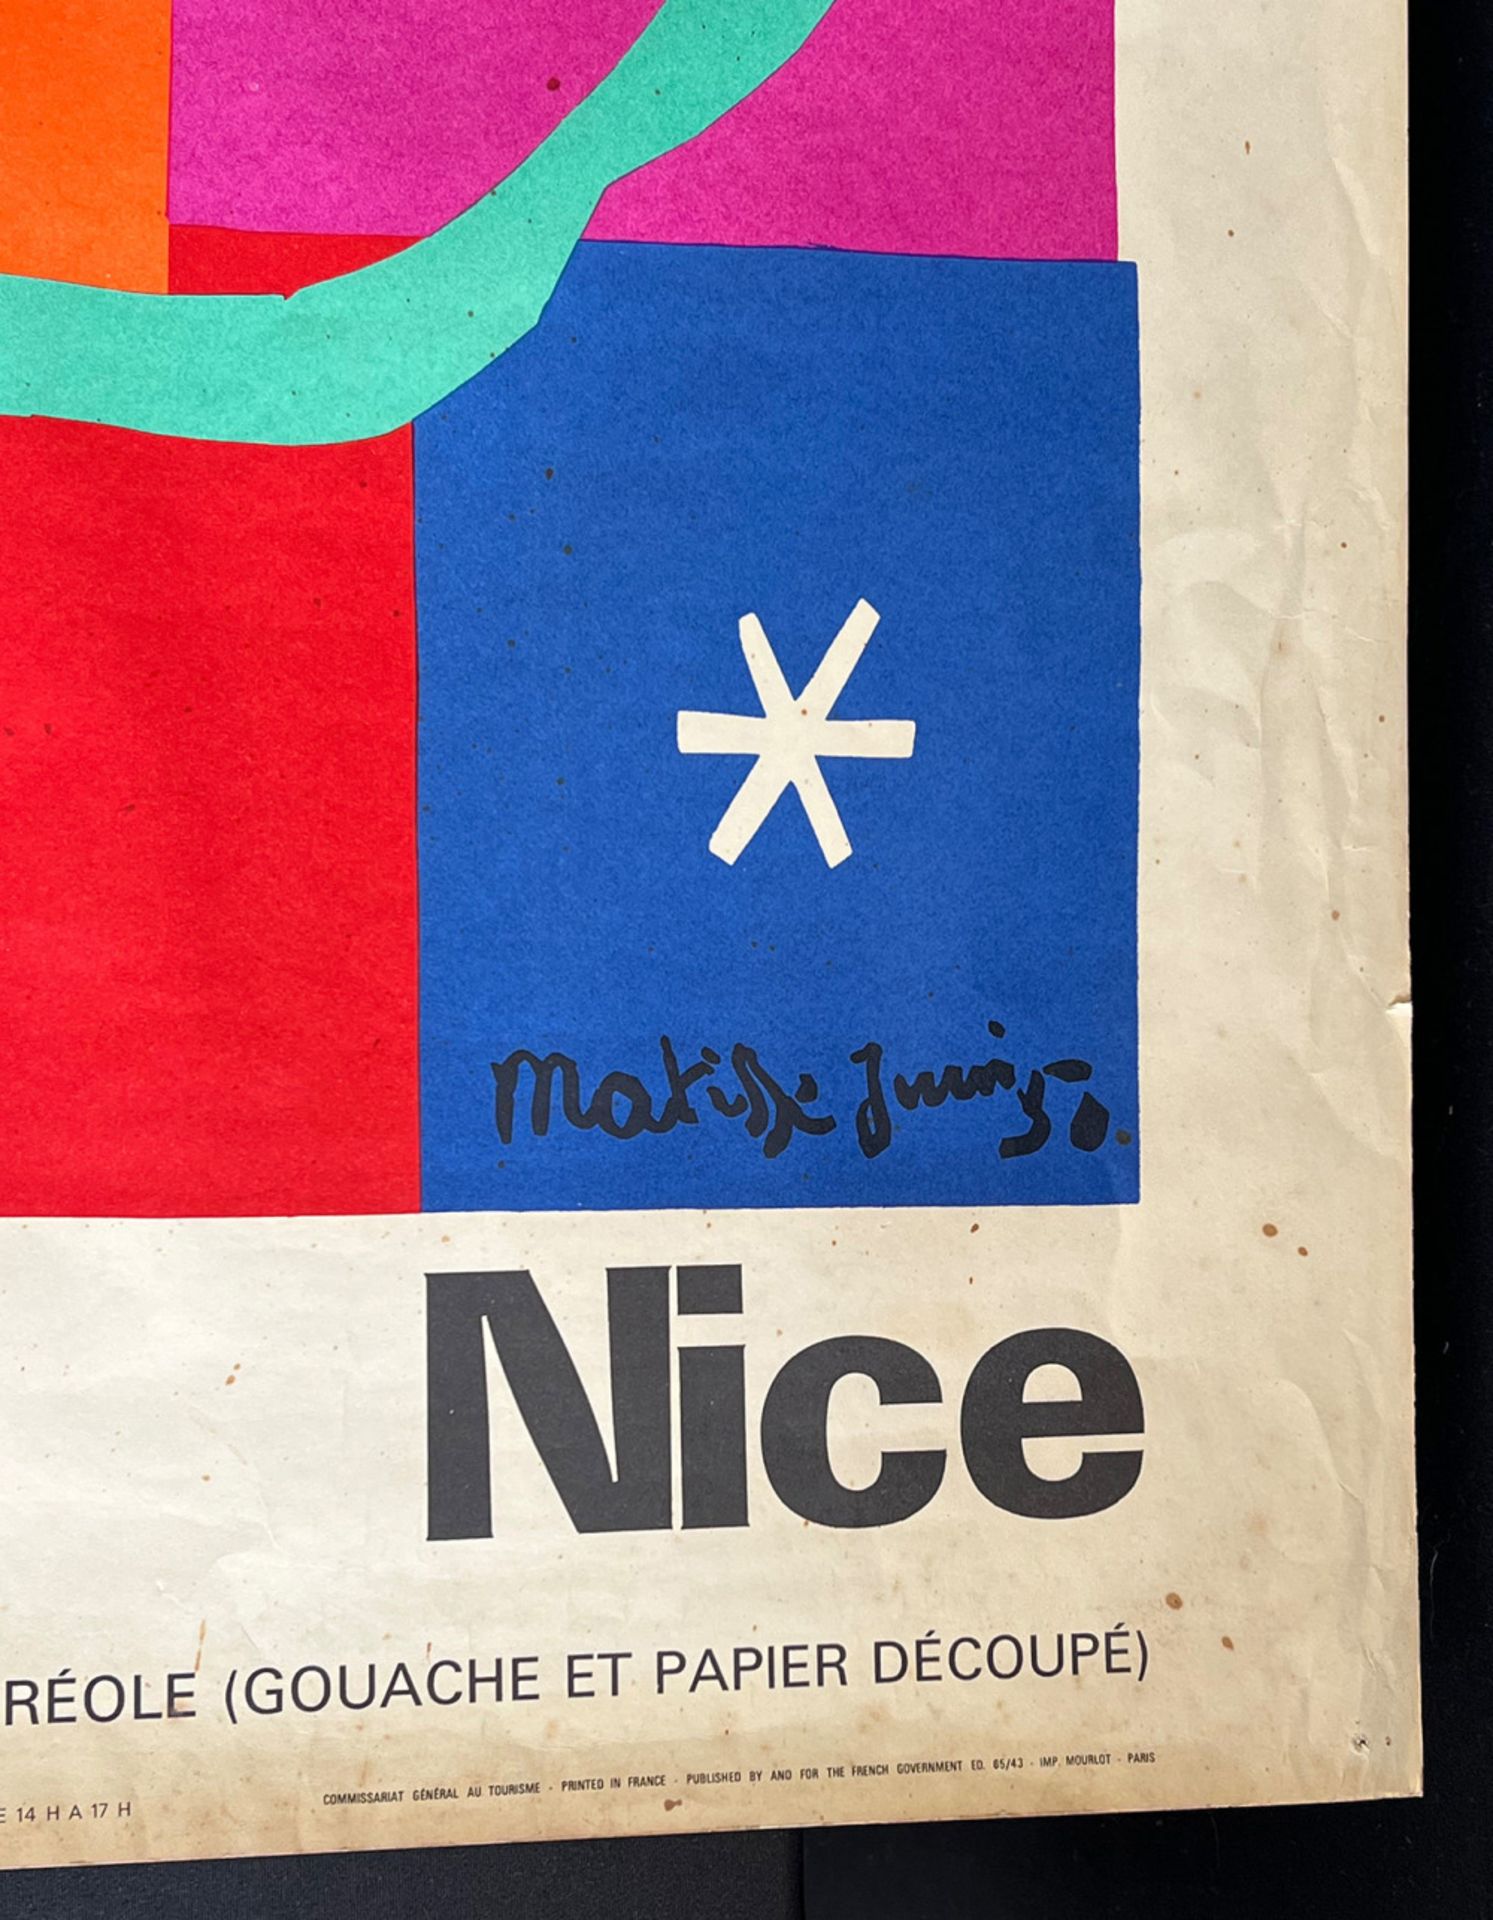 Henri Matisse. Le Cateau-Cambrésis 1869 - 1954 Nizza: Danseuse créole. Werbeplakat des - Image 7 of 13